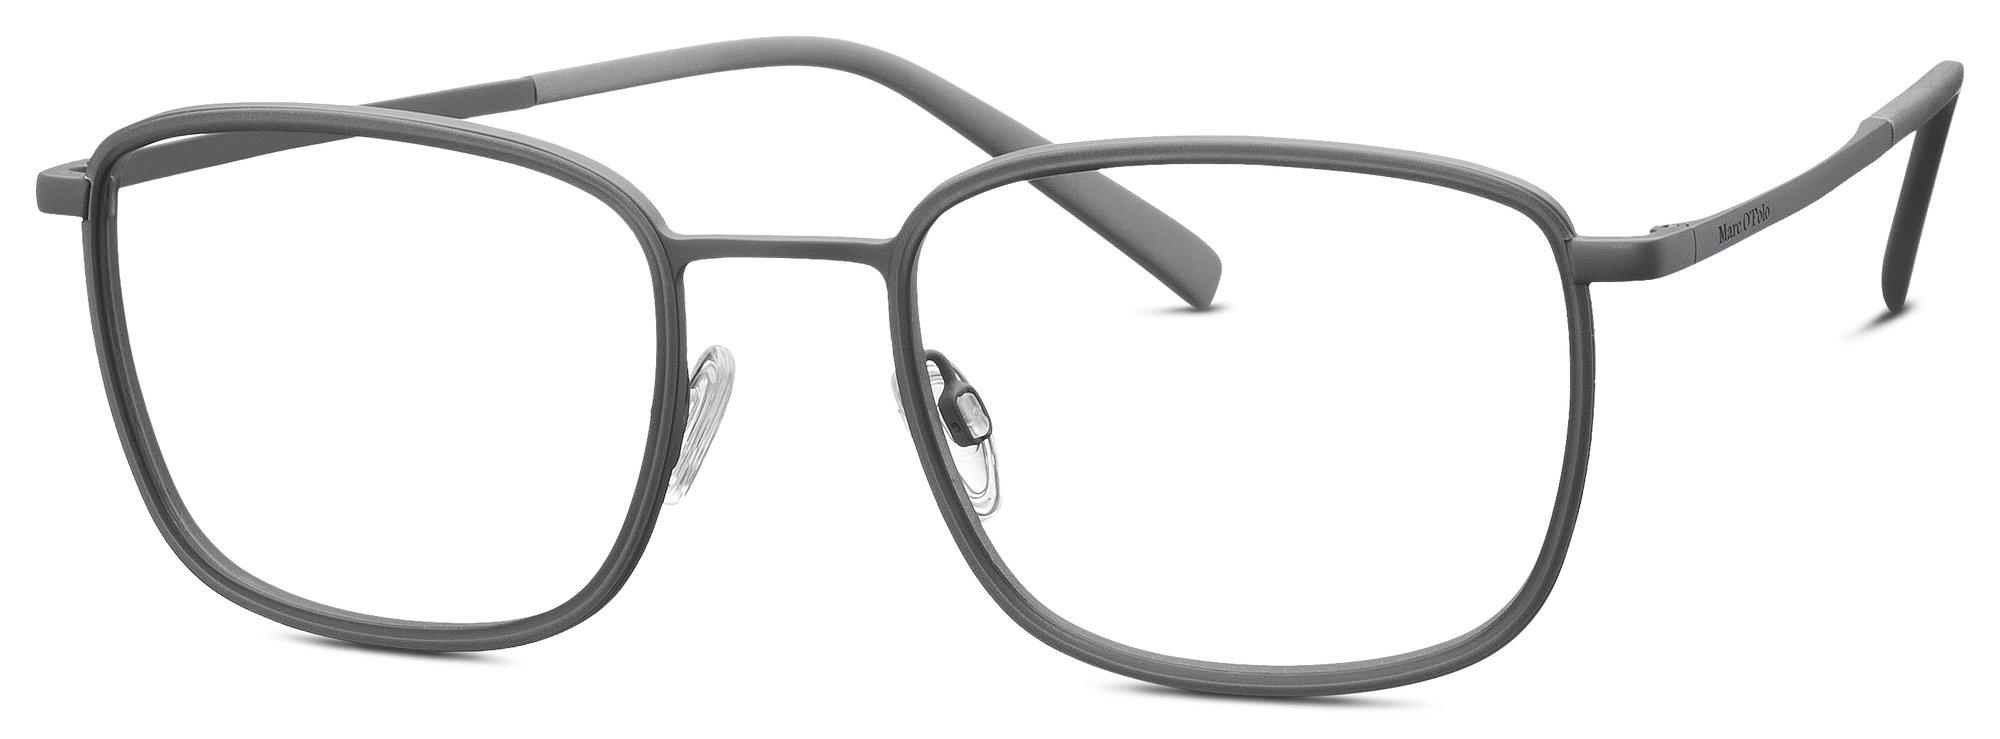 Das Bild zeigt die Korrektionsbrille 502186 30 von der Marke Marc O‘Polo in grau.